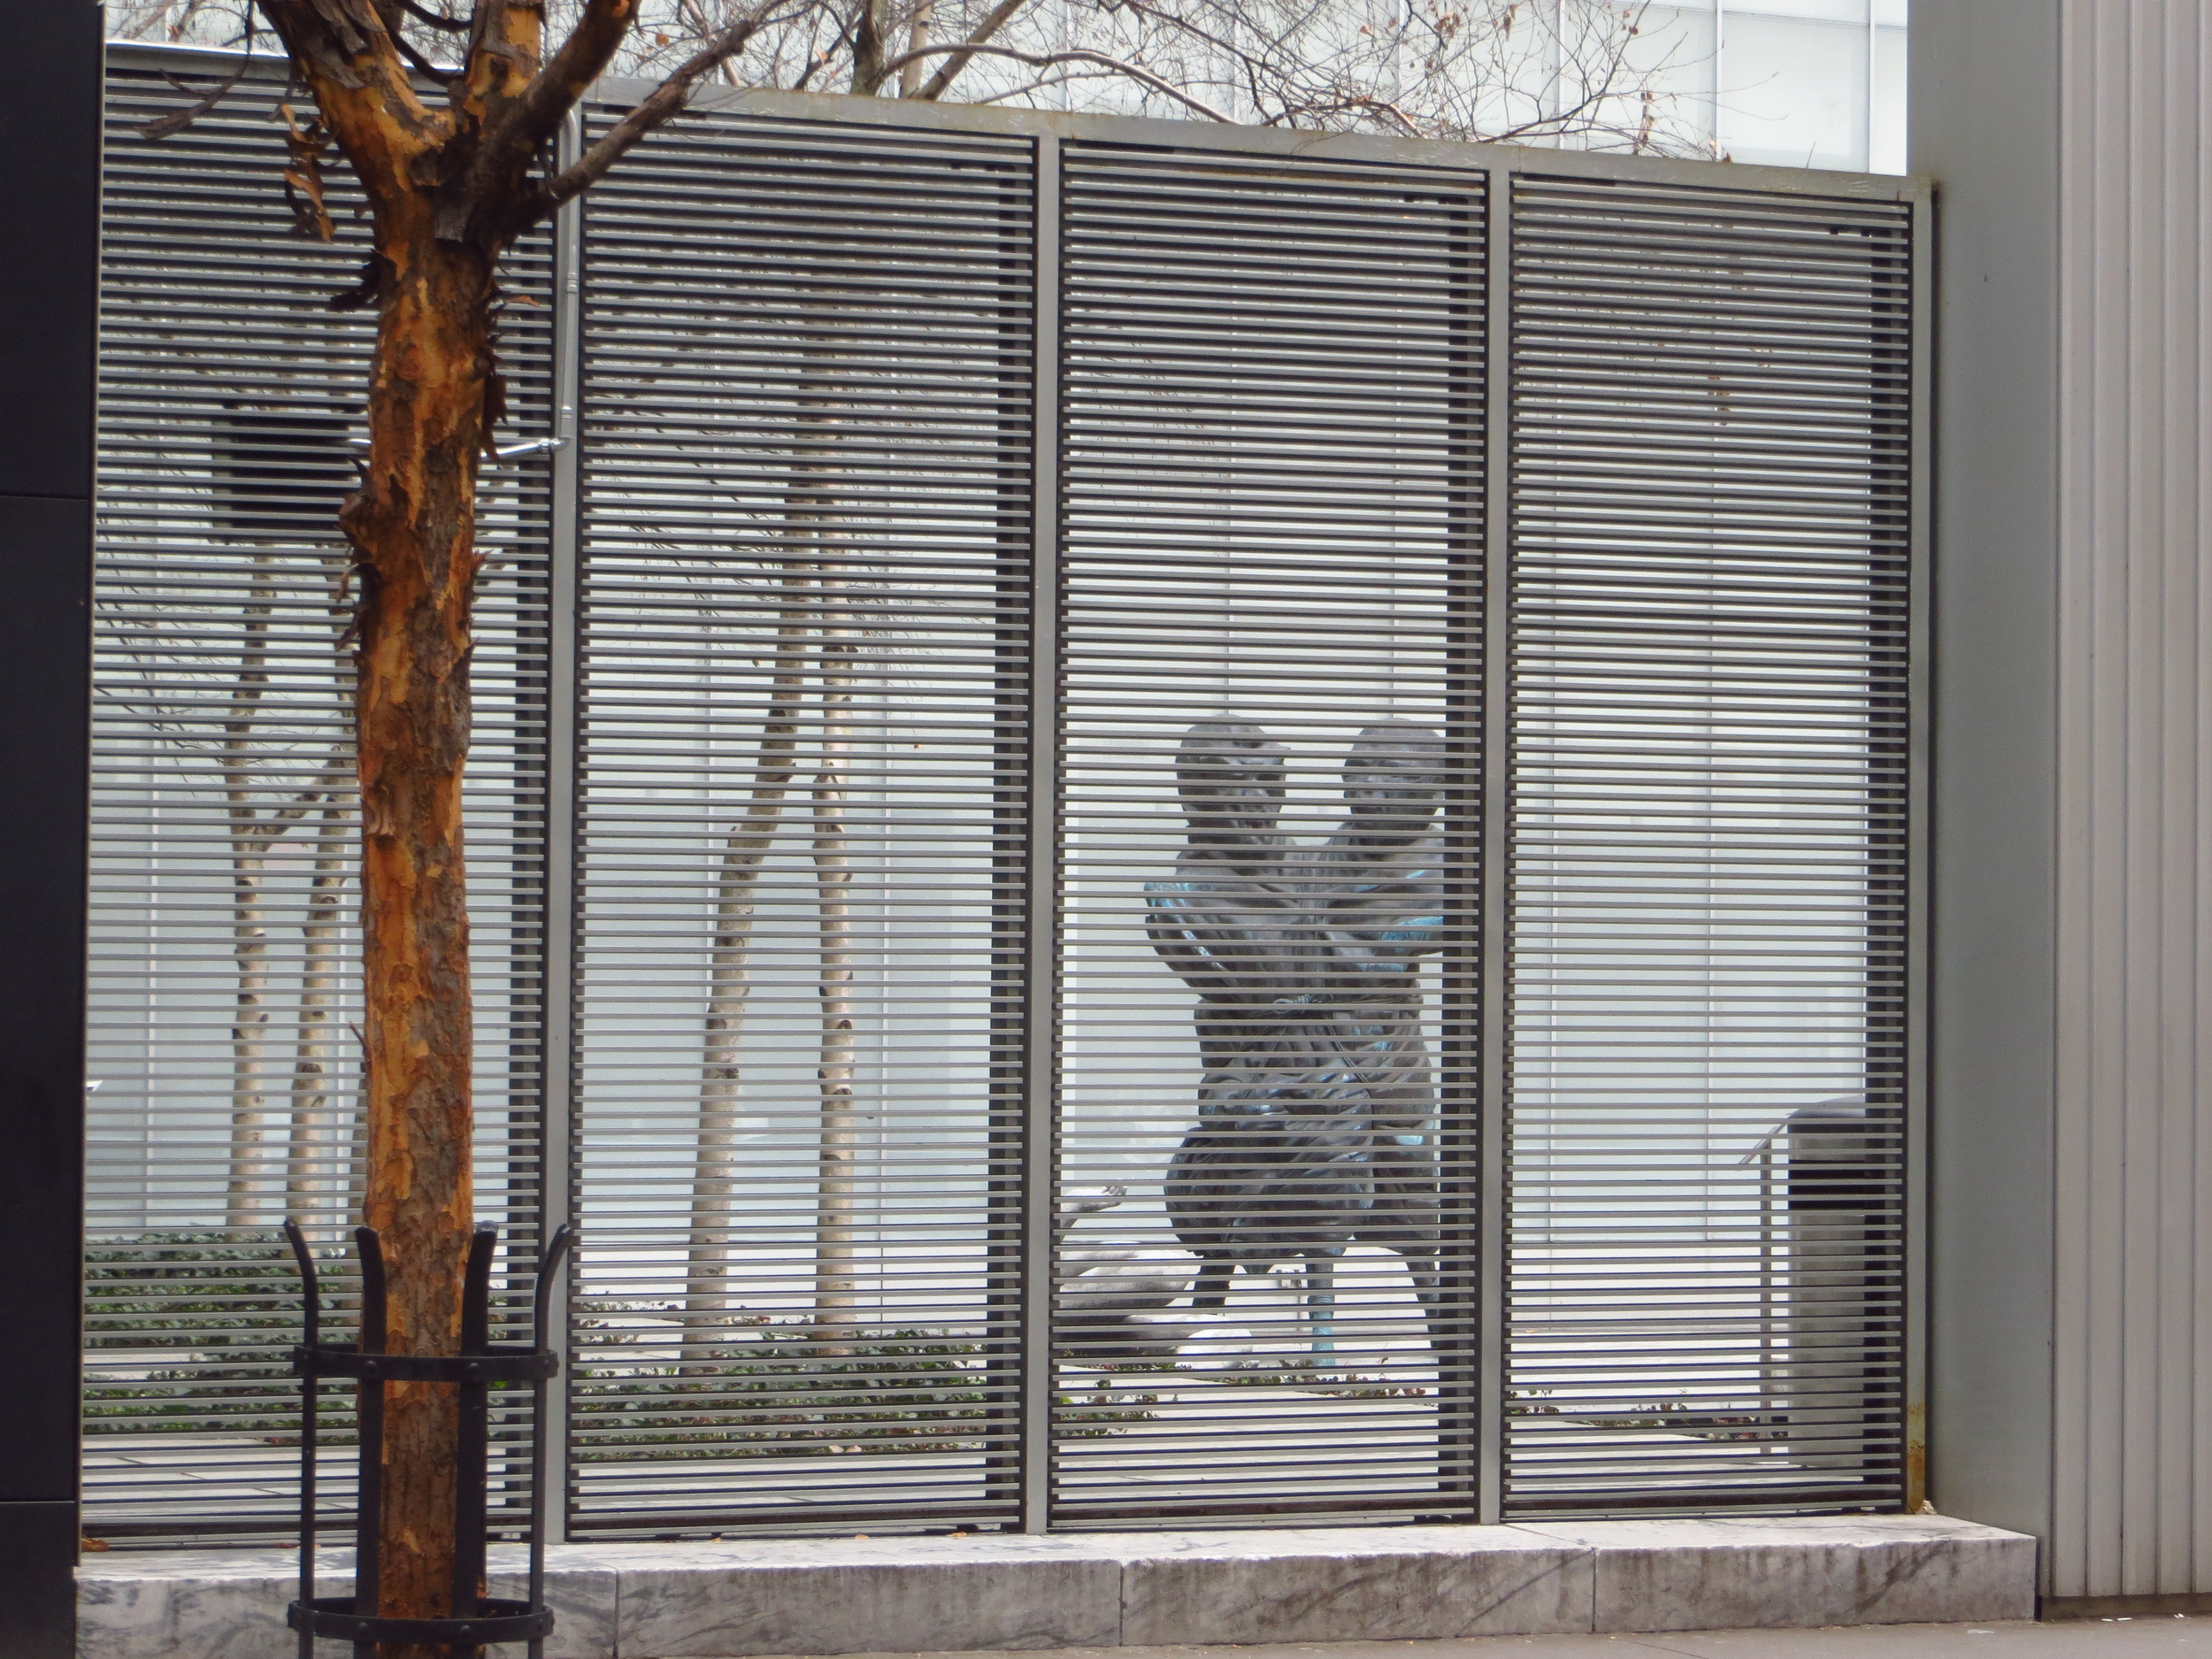 MoMA sculpture garden